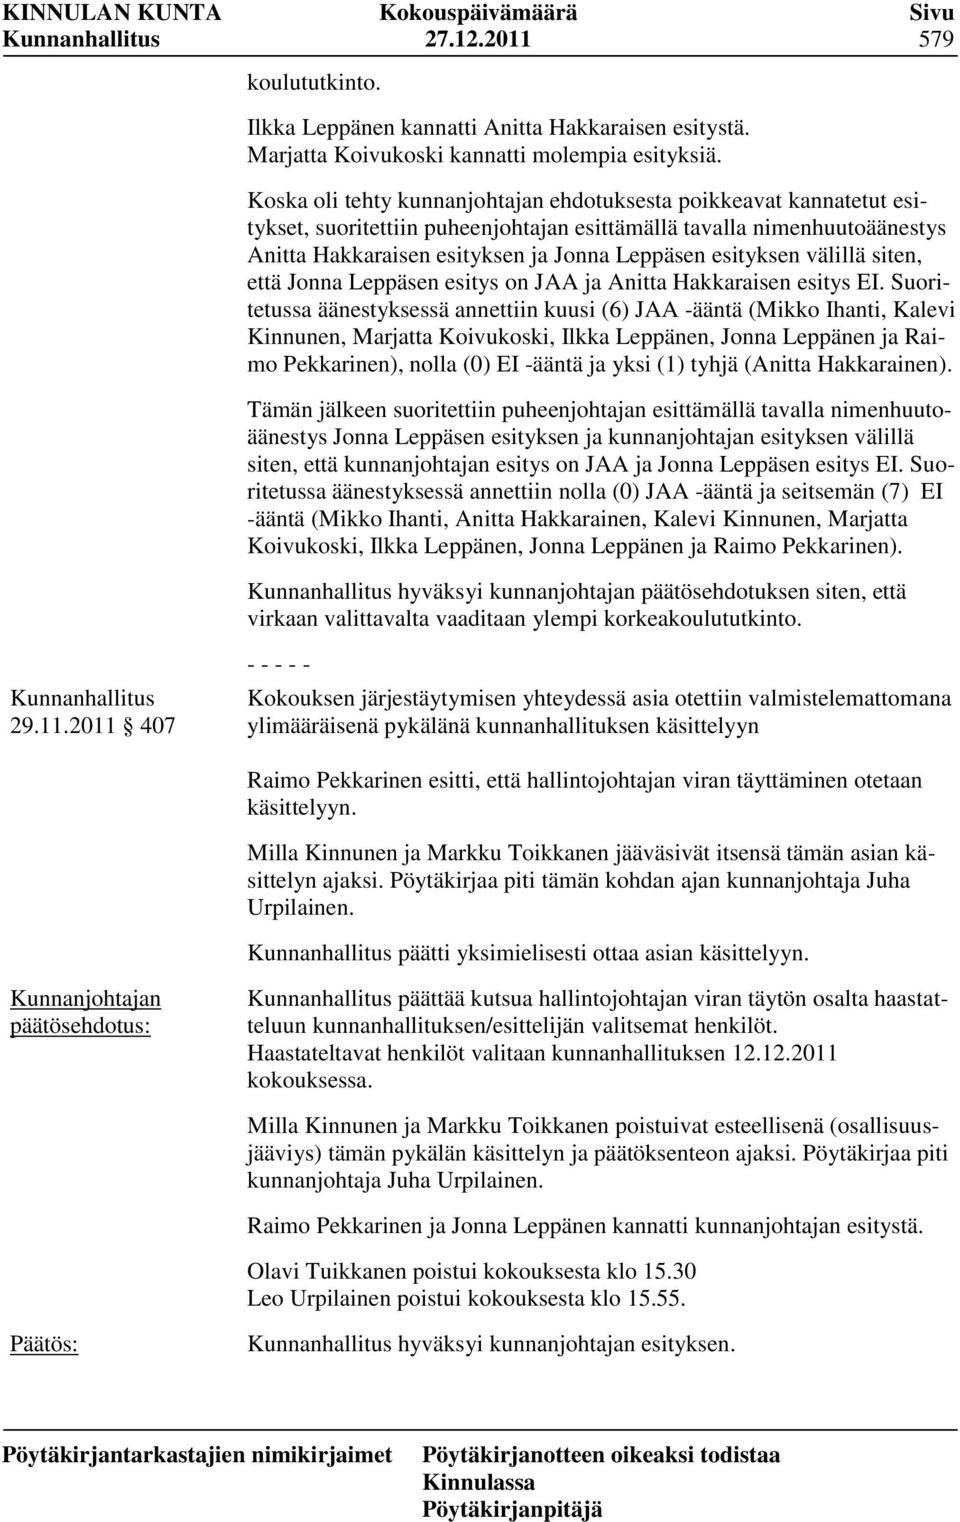 esityksen välillä siten, että Jonna Leppäsen esitys on JAA ja Anitta Hakkaraisen esitys EI.